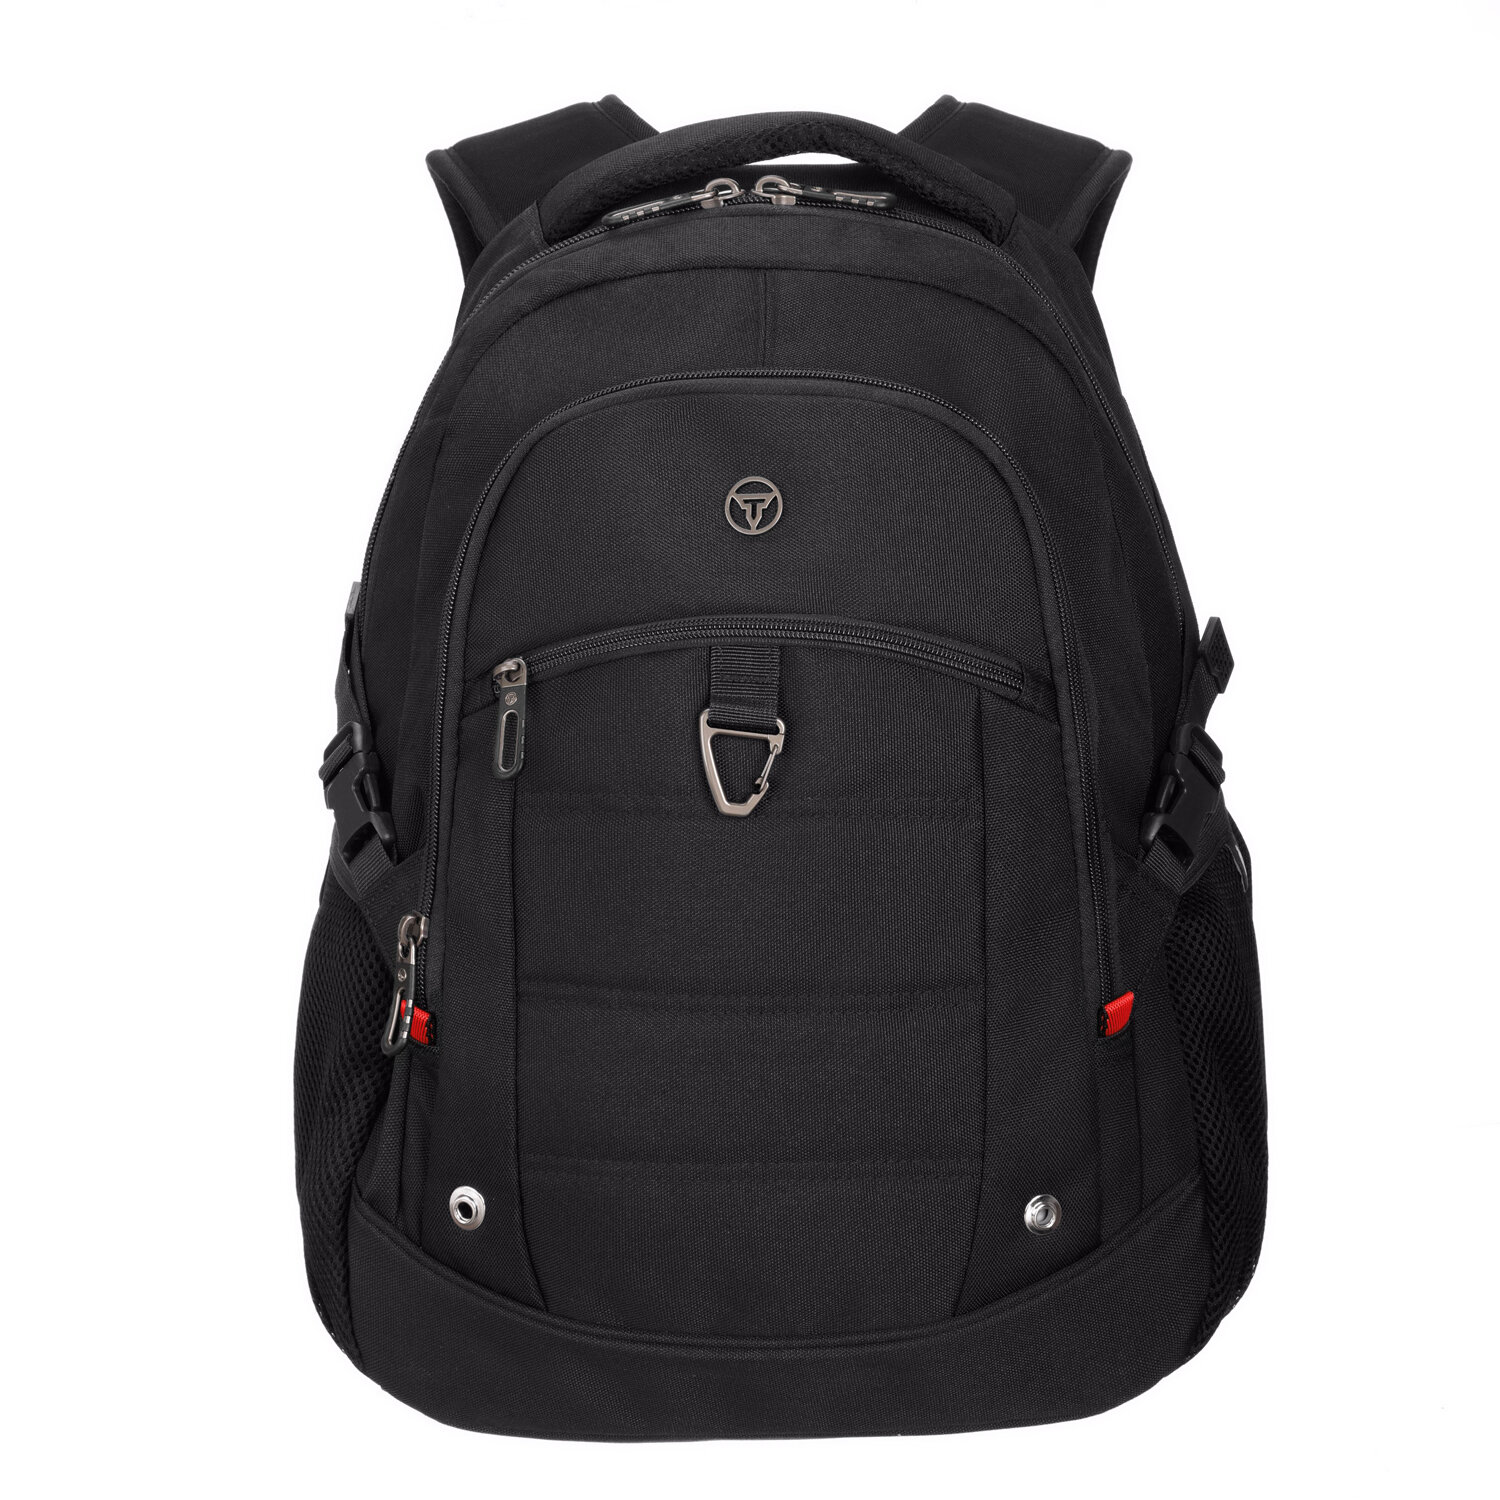 Городской рюкзак TORBER XPLOR T9660 с отделением для ноутбука 15", черный, полиэстер, 46.5х32.5х15.5 см, 24 л